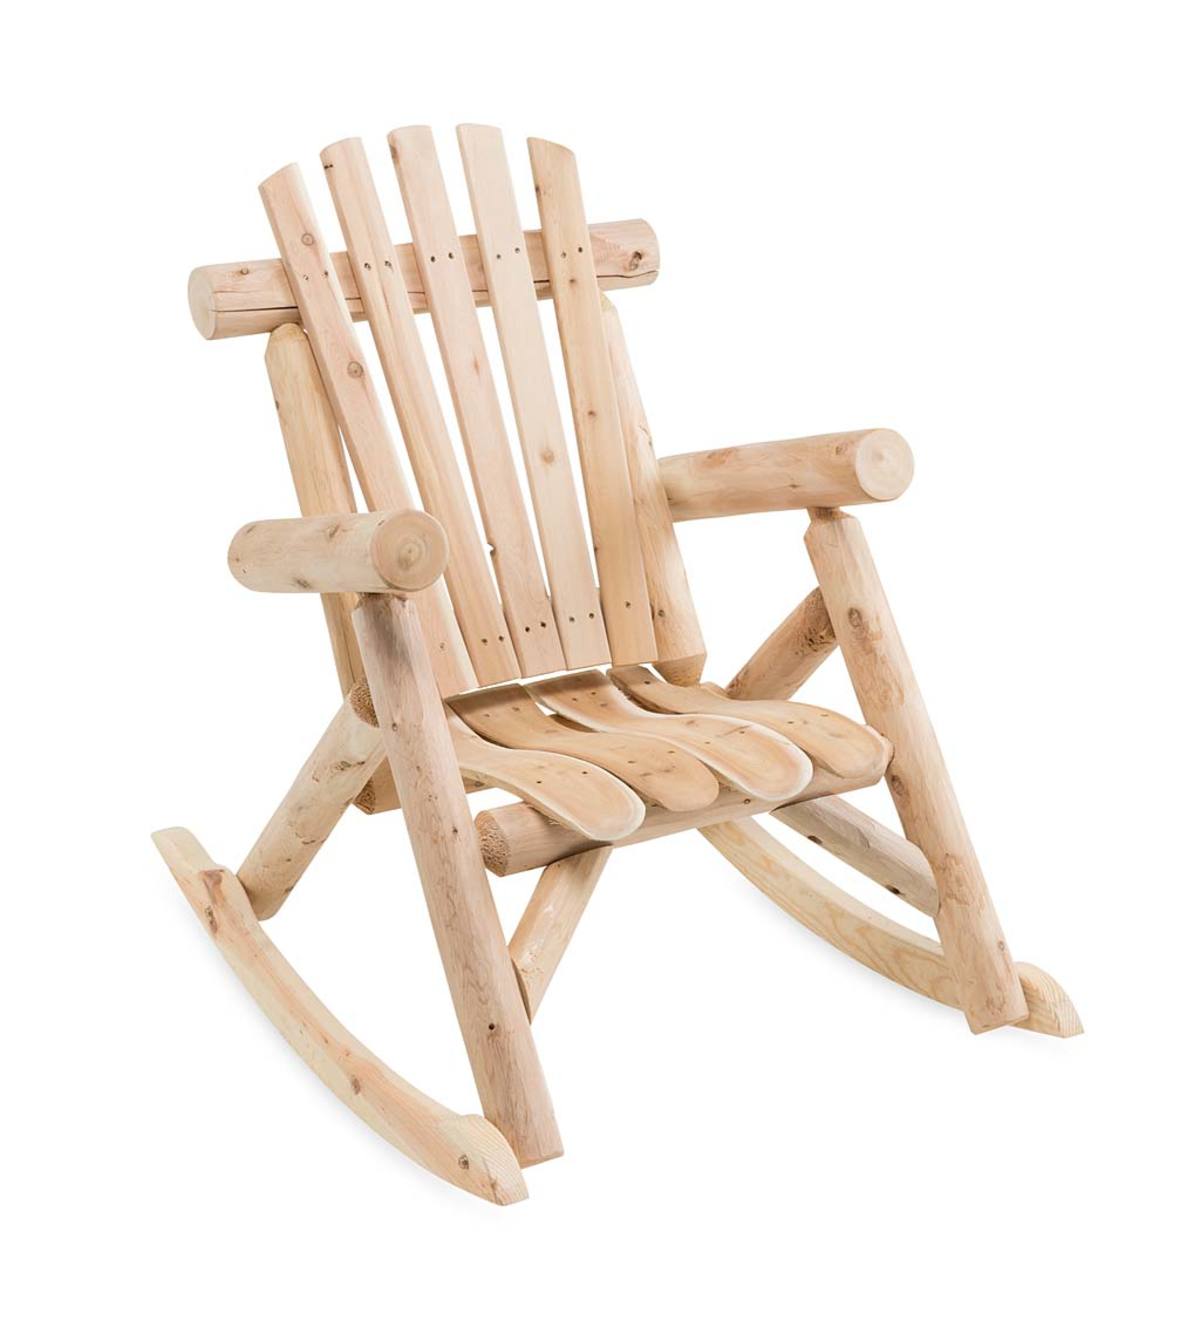 Northern White Cedar Outdoor Rocking Chair